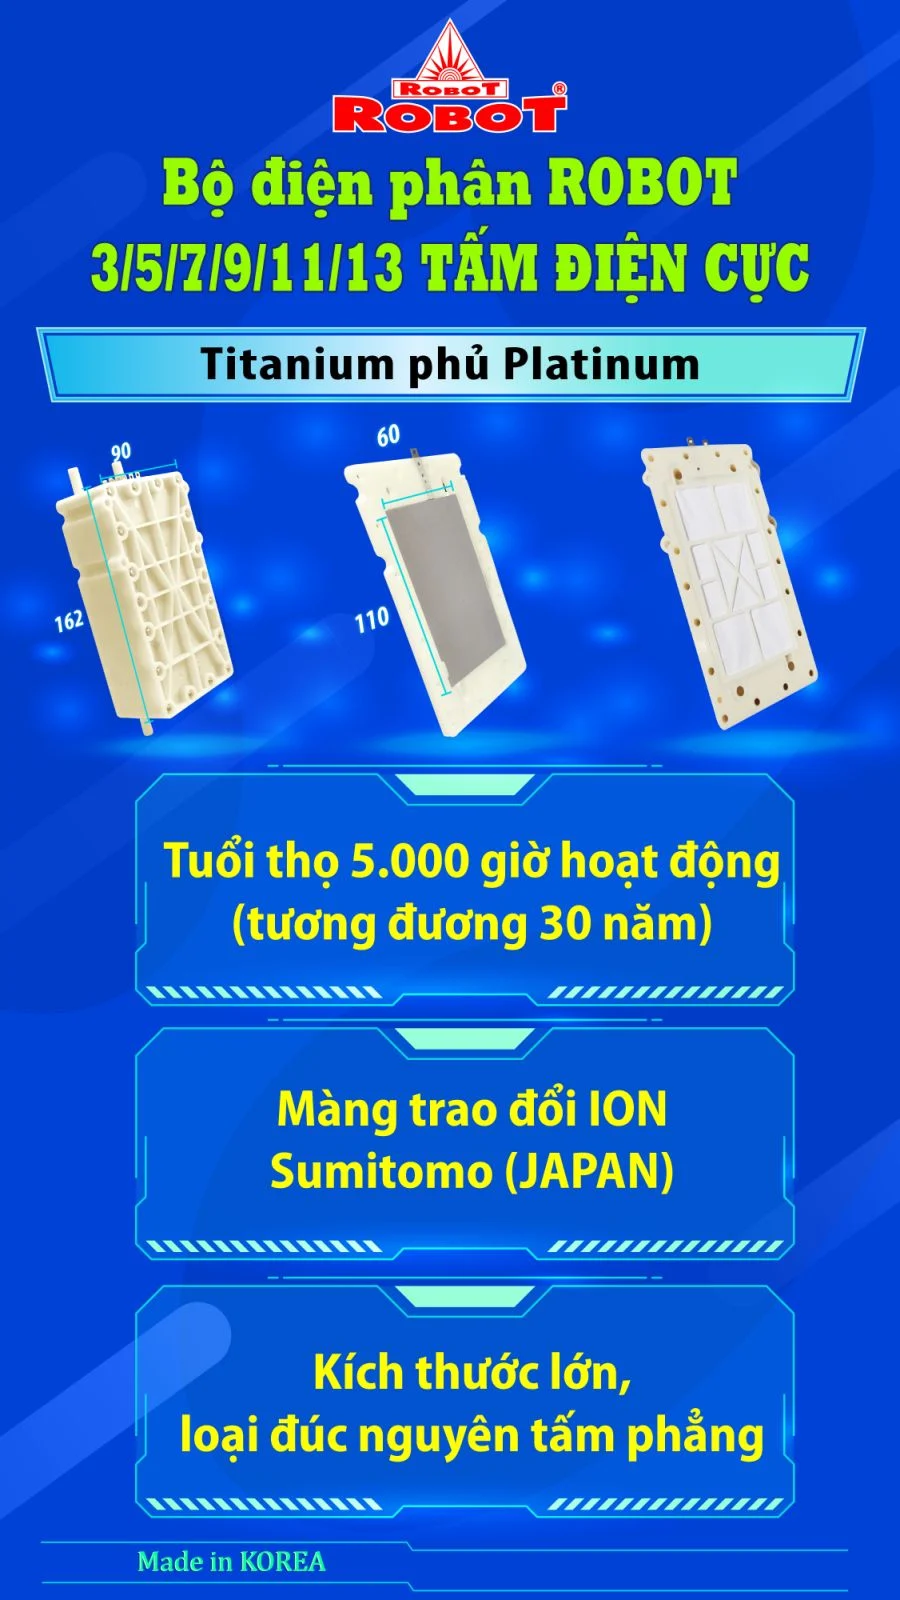 Bộ điện phân đến 3 tấm điện cực Titanium phủ Platinum của IONKING 1314